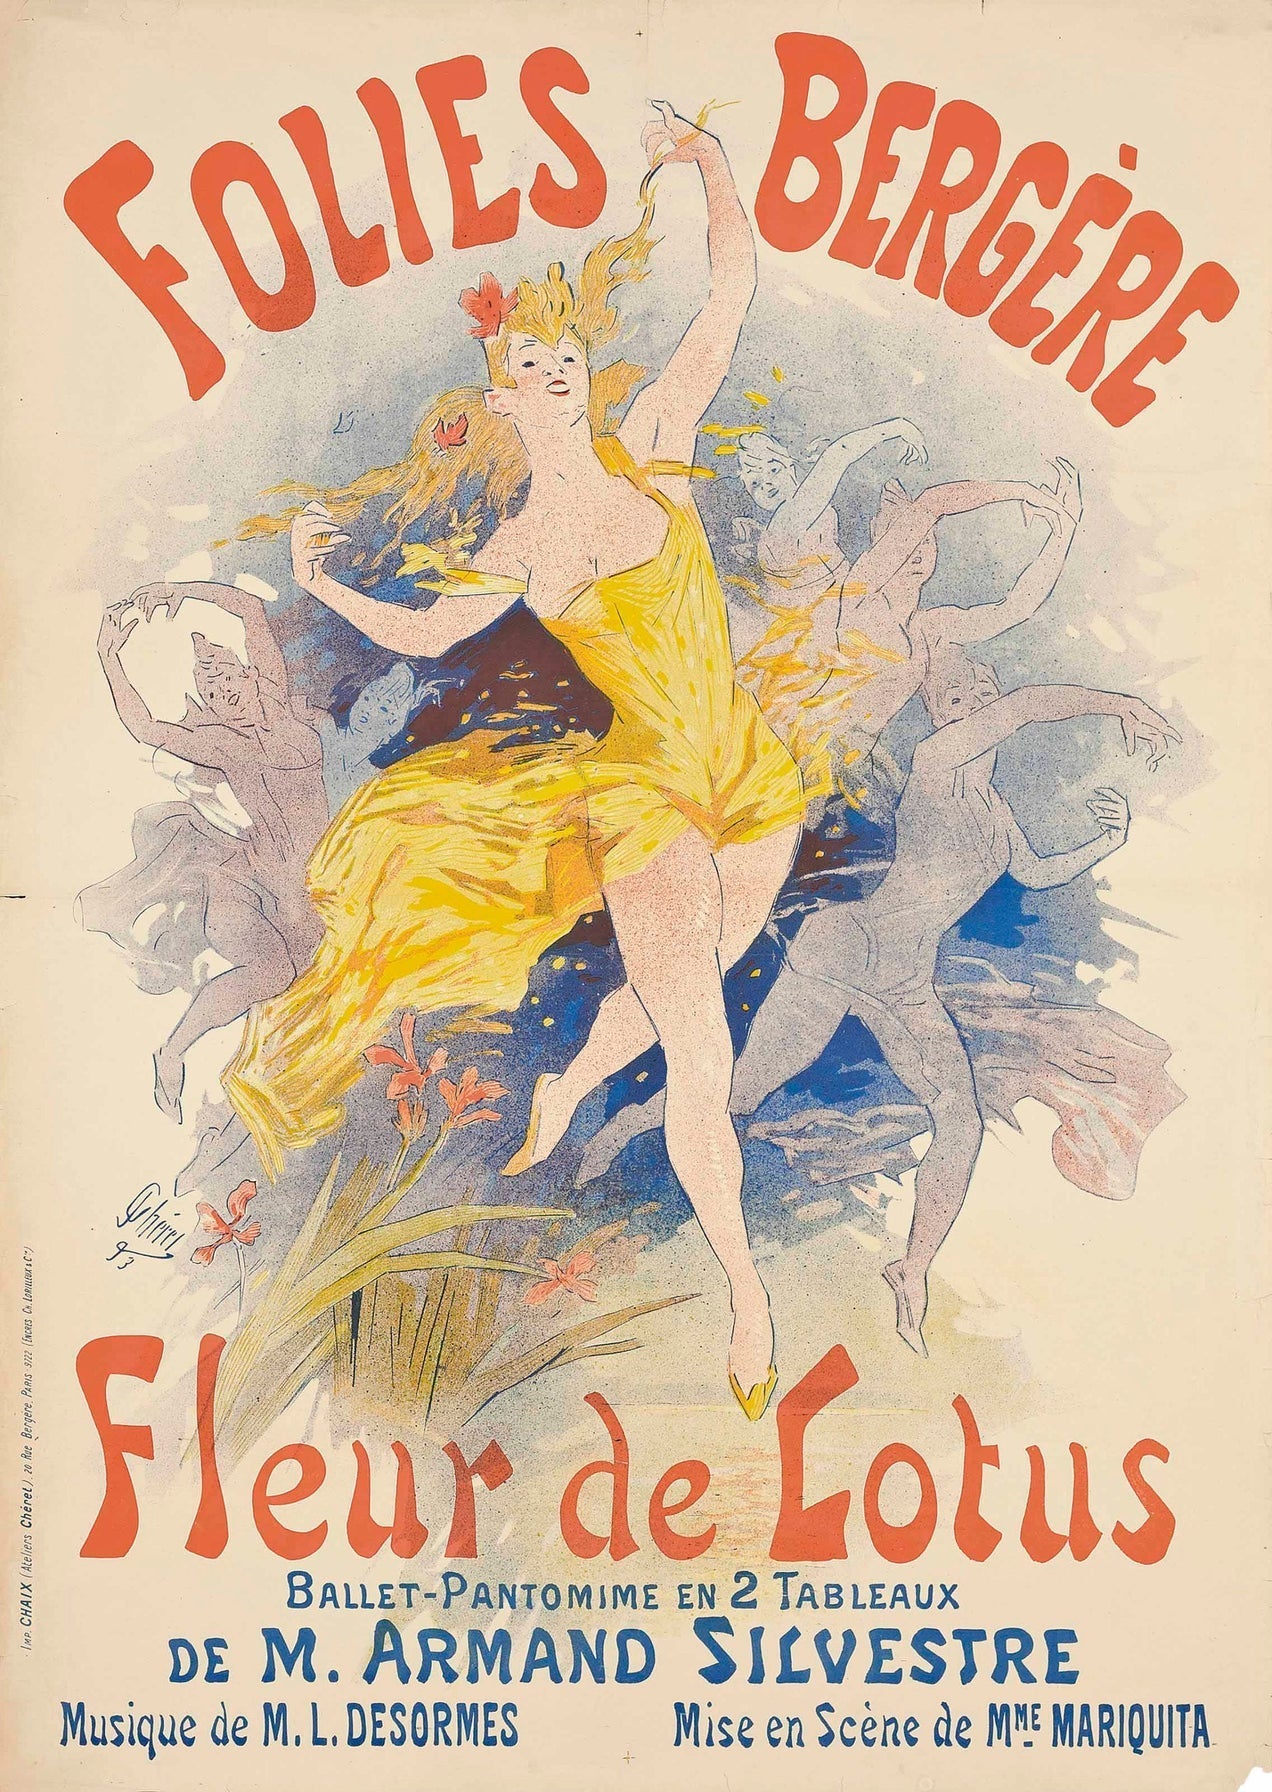 Fleur de Lotus Ballet poster, Paris (1890s) | Art nouveau prints | Jules Cheret Posters, Prints, & Visual Artwork The Trumpet Shop   